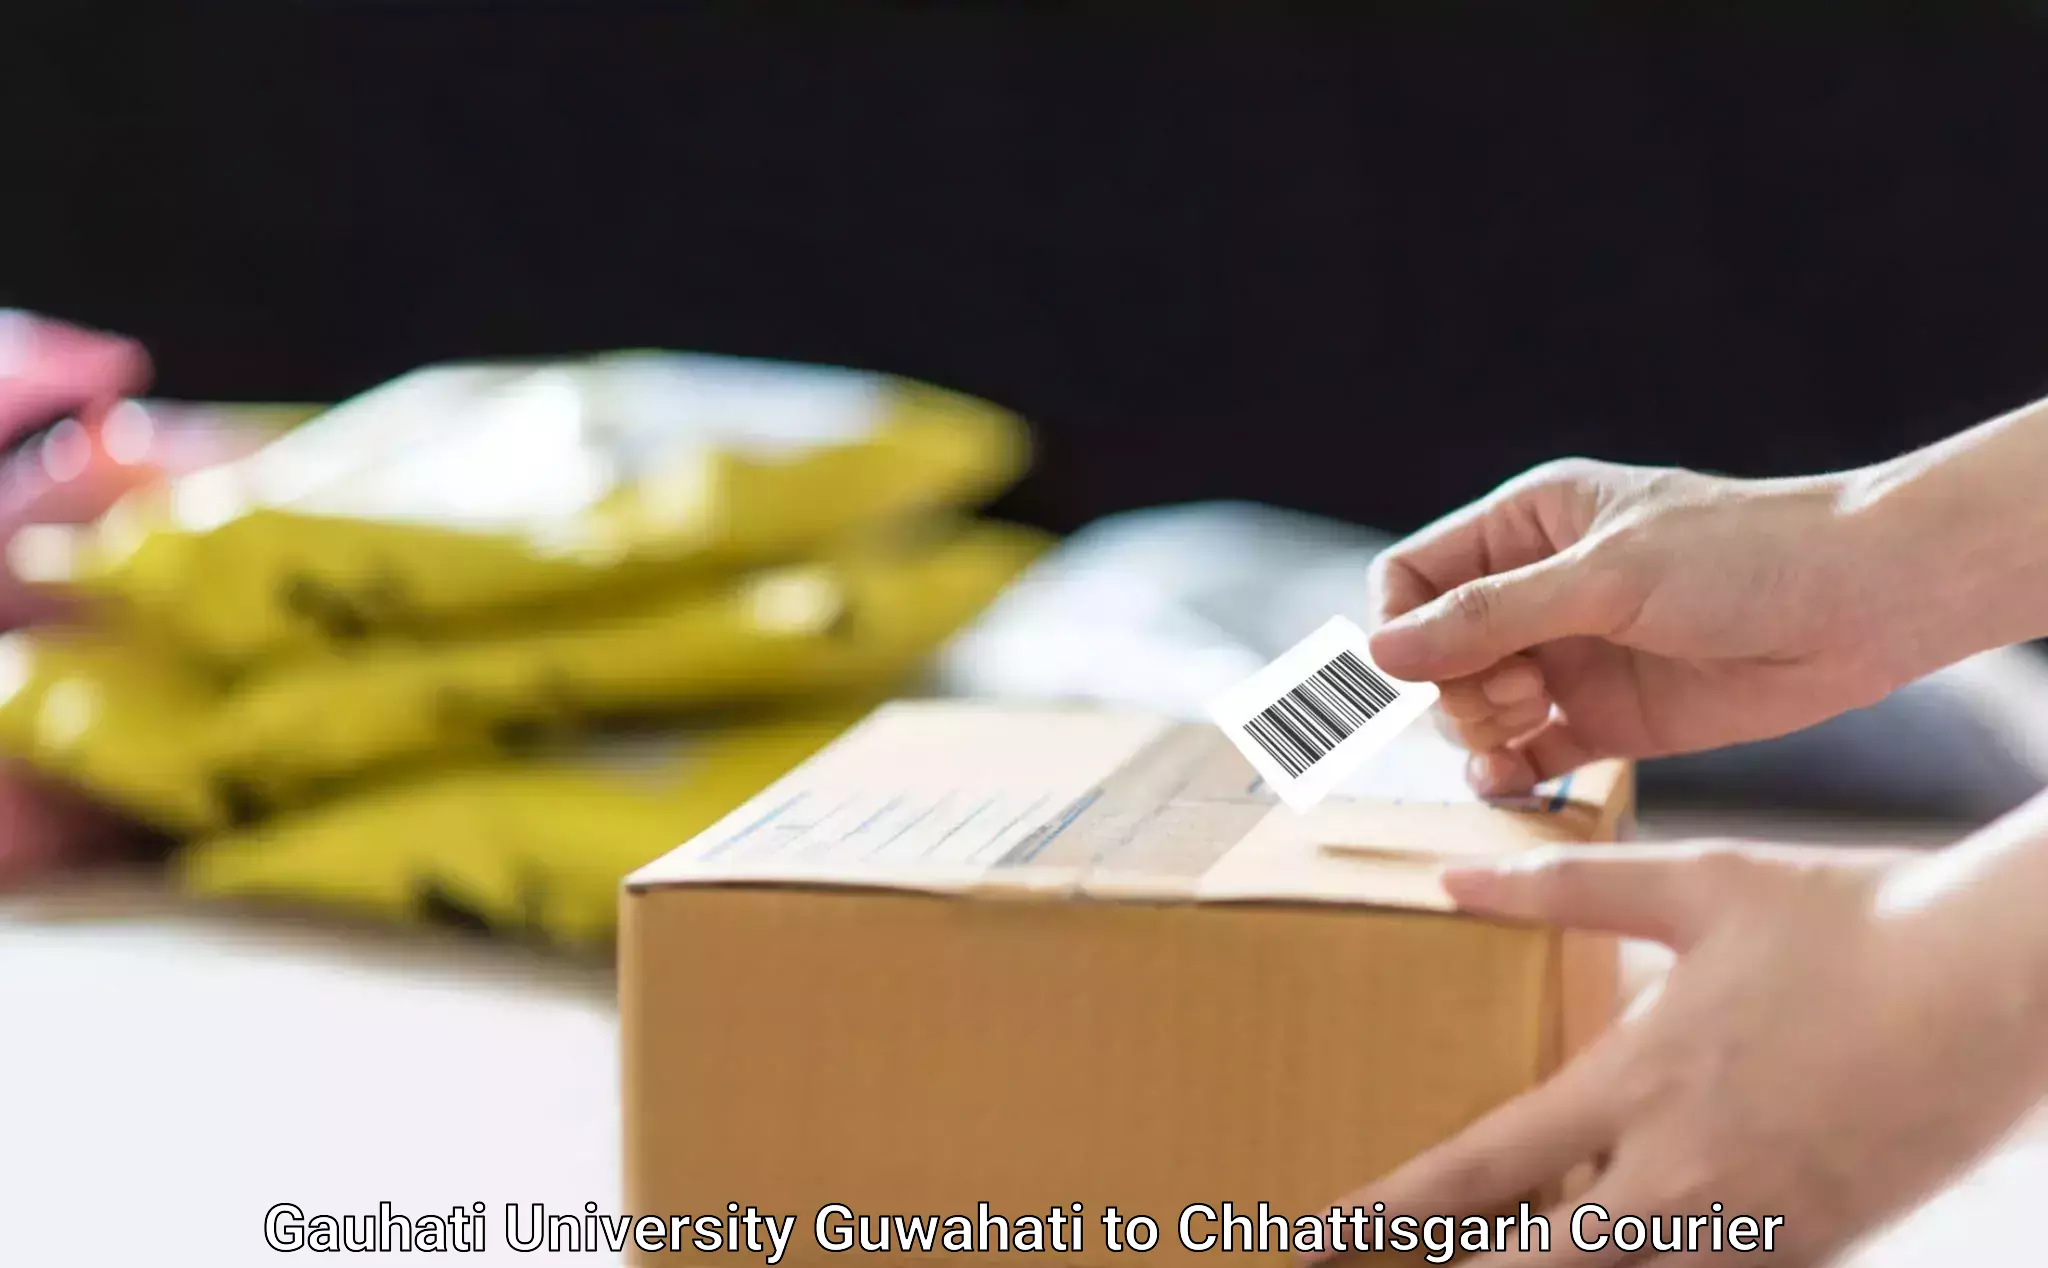 E-commerce shipping in Gauhati University Guwahati to Chhattisgarh